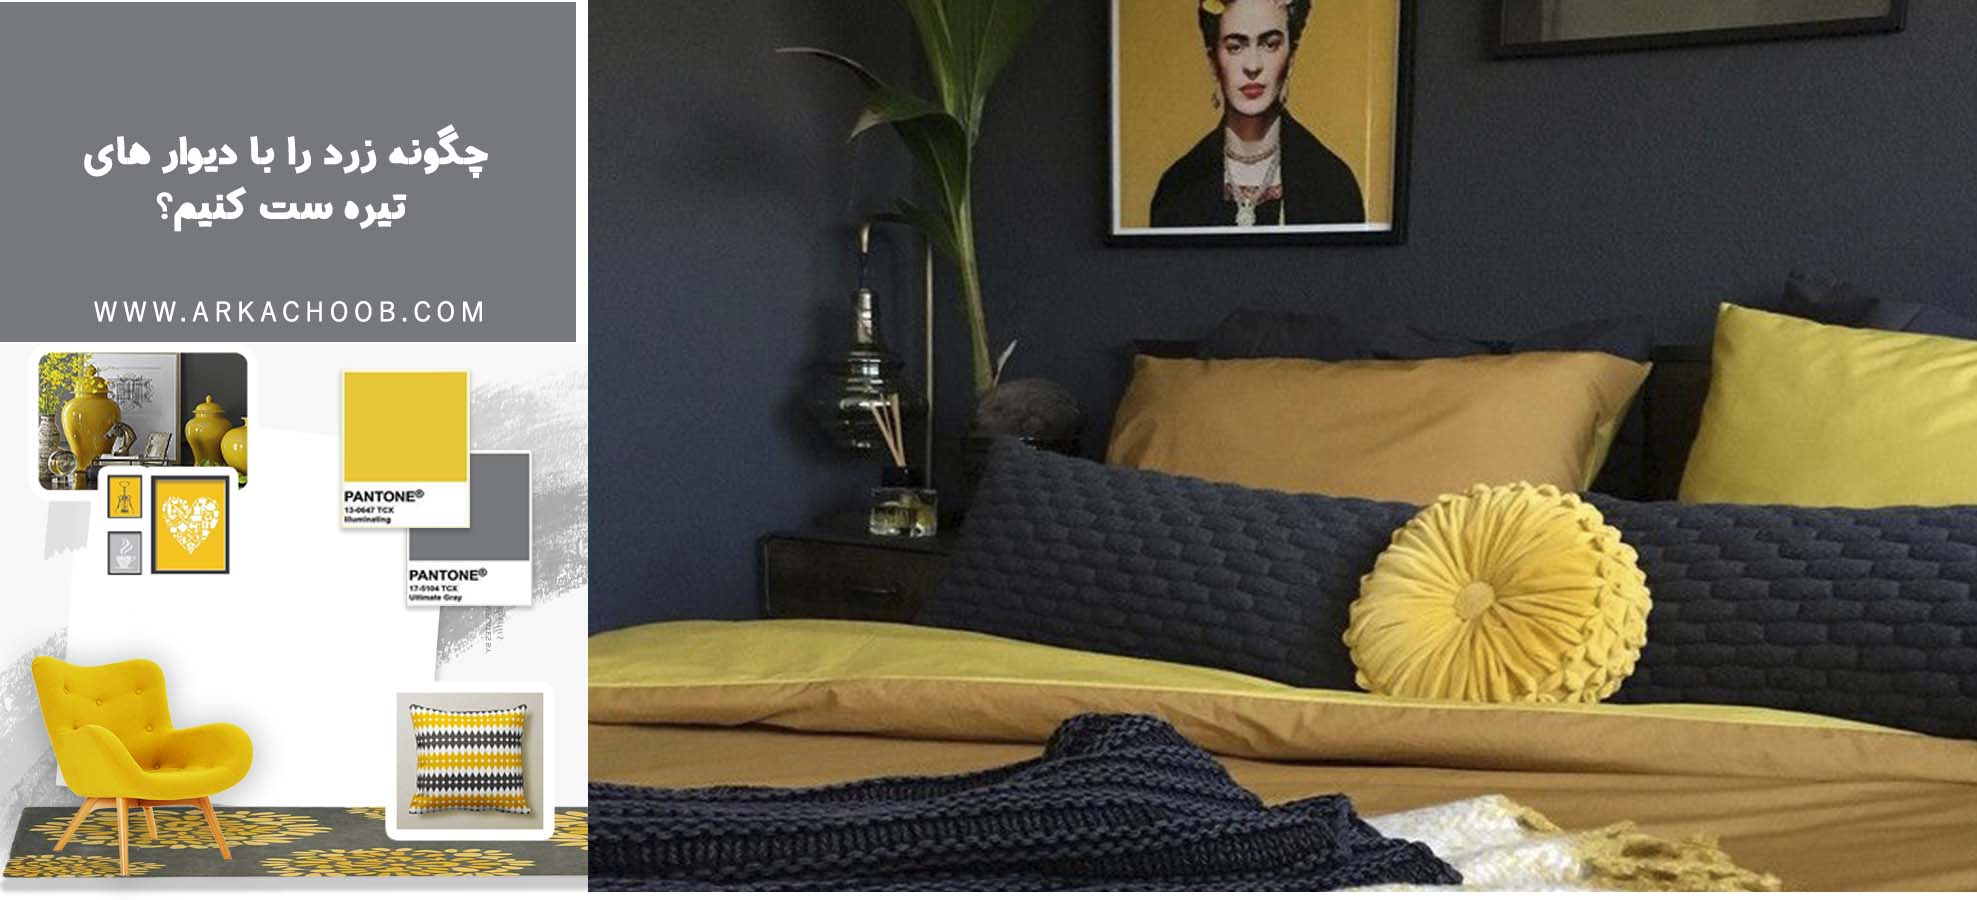 چگونه زرد را با دیوارهای تیره ست کنیم؟ - استفاده از رنگ زرد در اتاق خواب